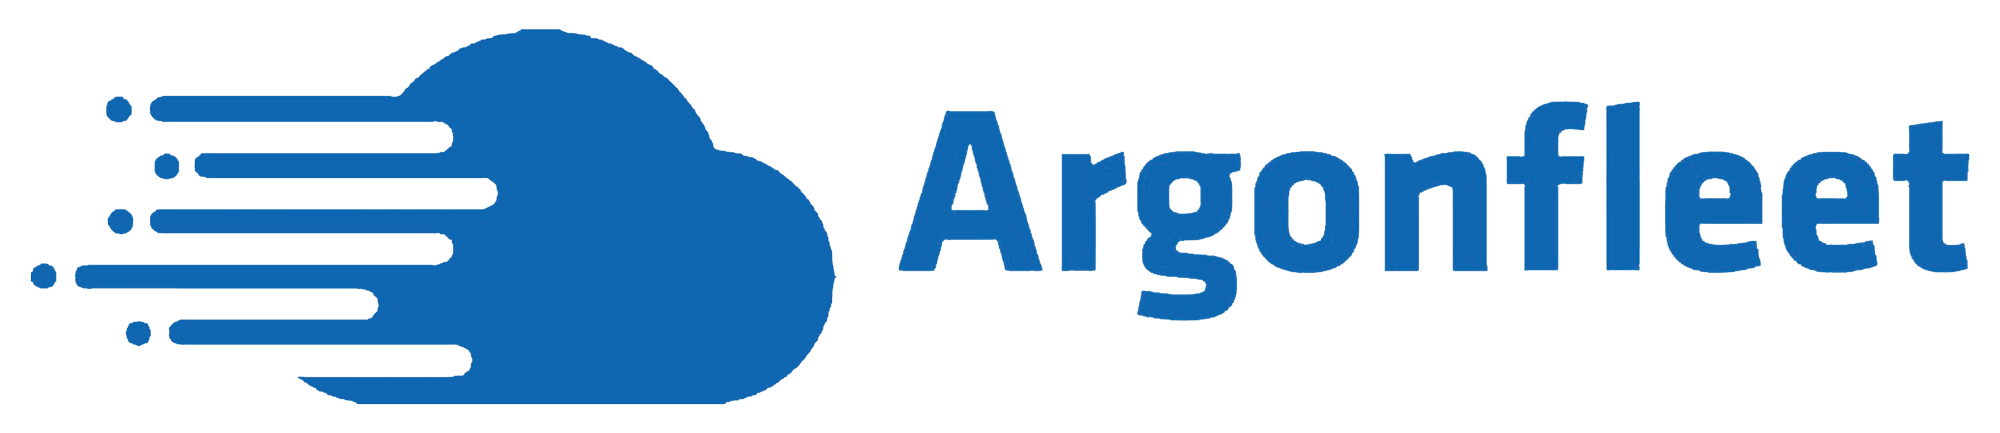 ArgonFleet